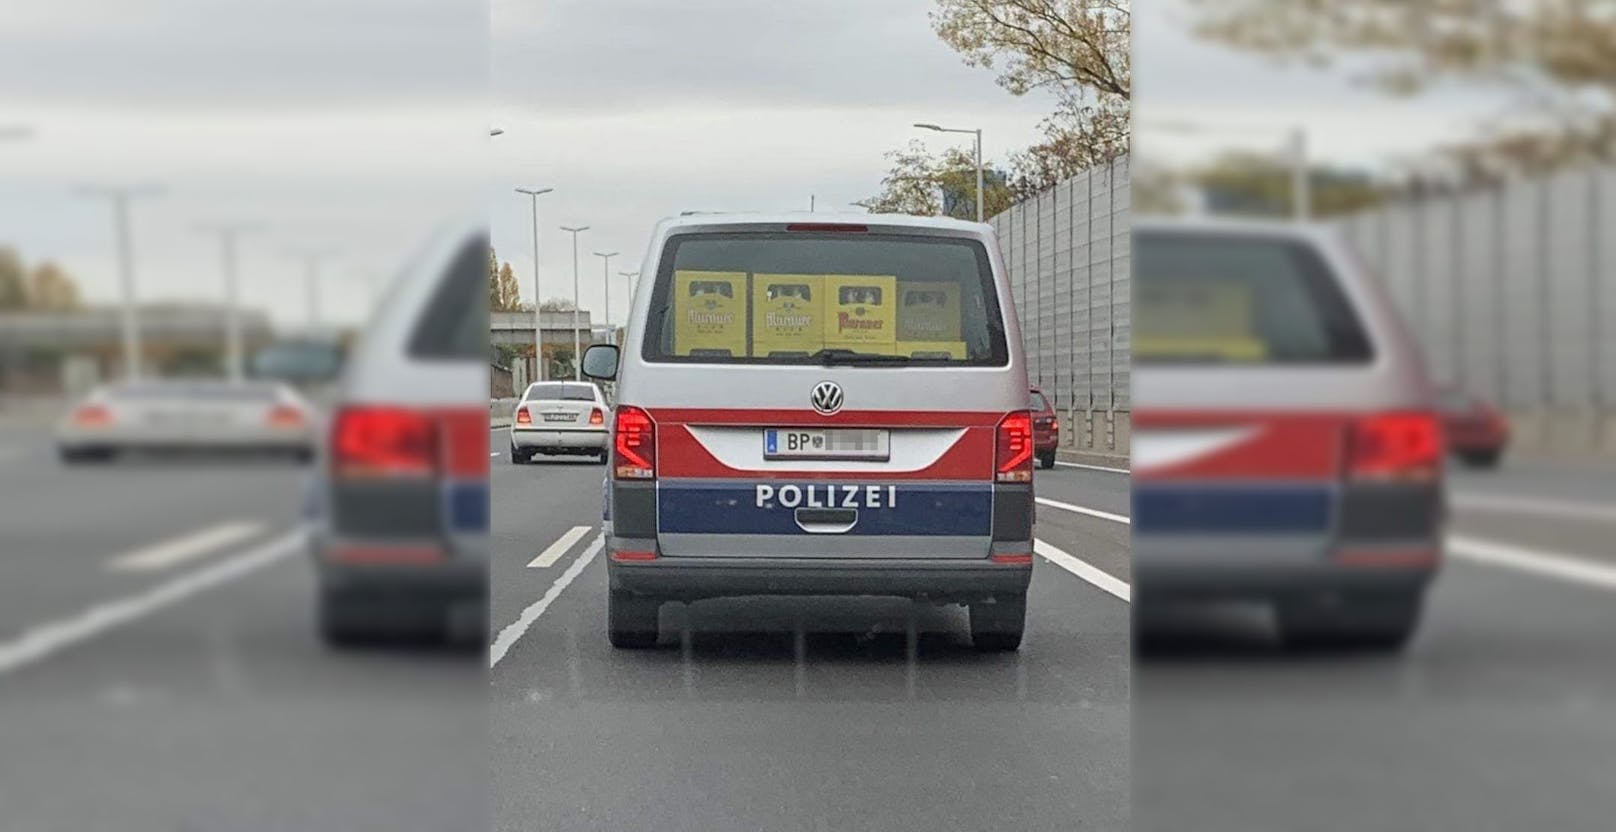 Die Polizeibus wurde in Wien gesichtet.